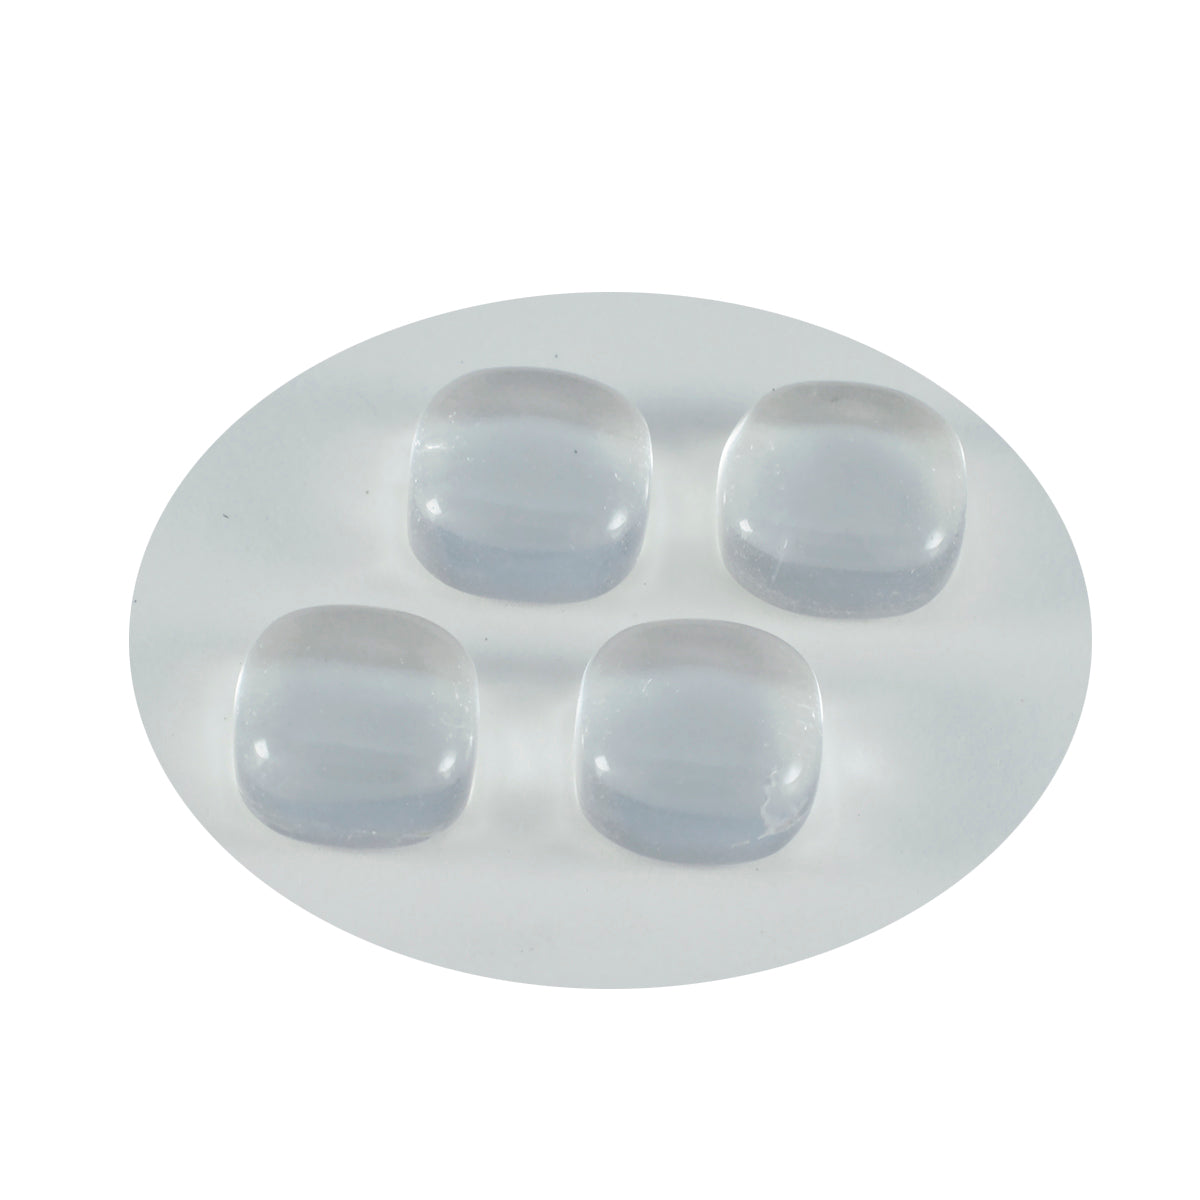 Riyogems – cabochon de quartz en cristal blanc, 7x7mm, en forme de coussin, jolie pierre précieuse en vrac de qualité, 1 pièce